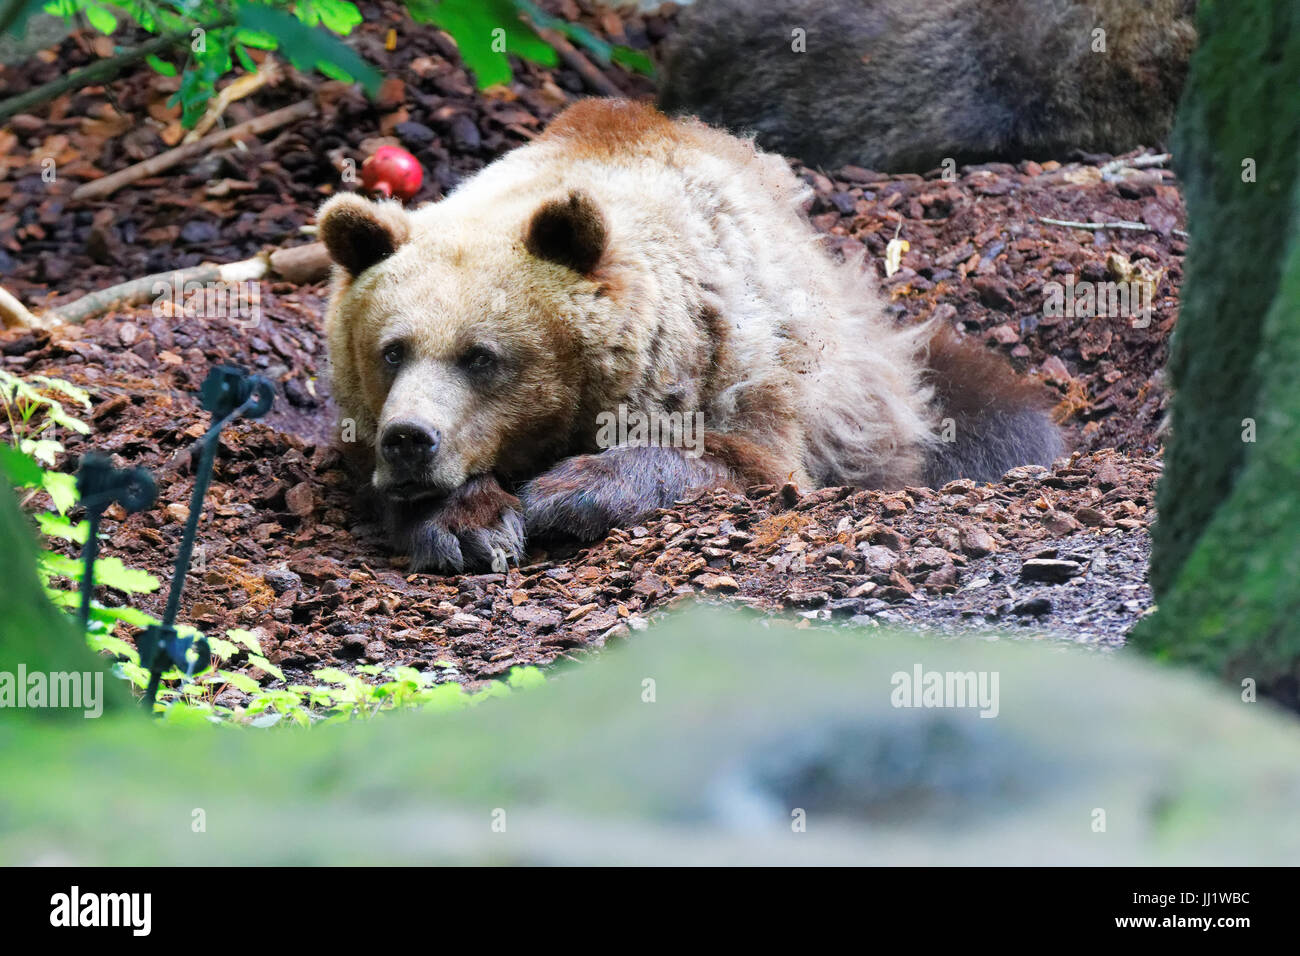 Bear, Beauval zoo, france Stock Photo